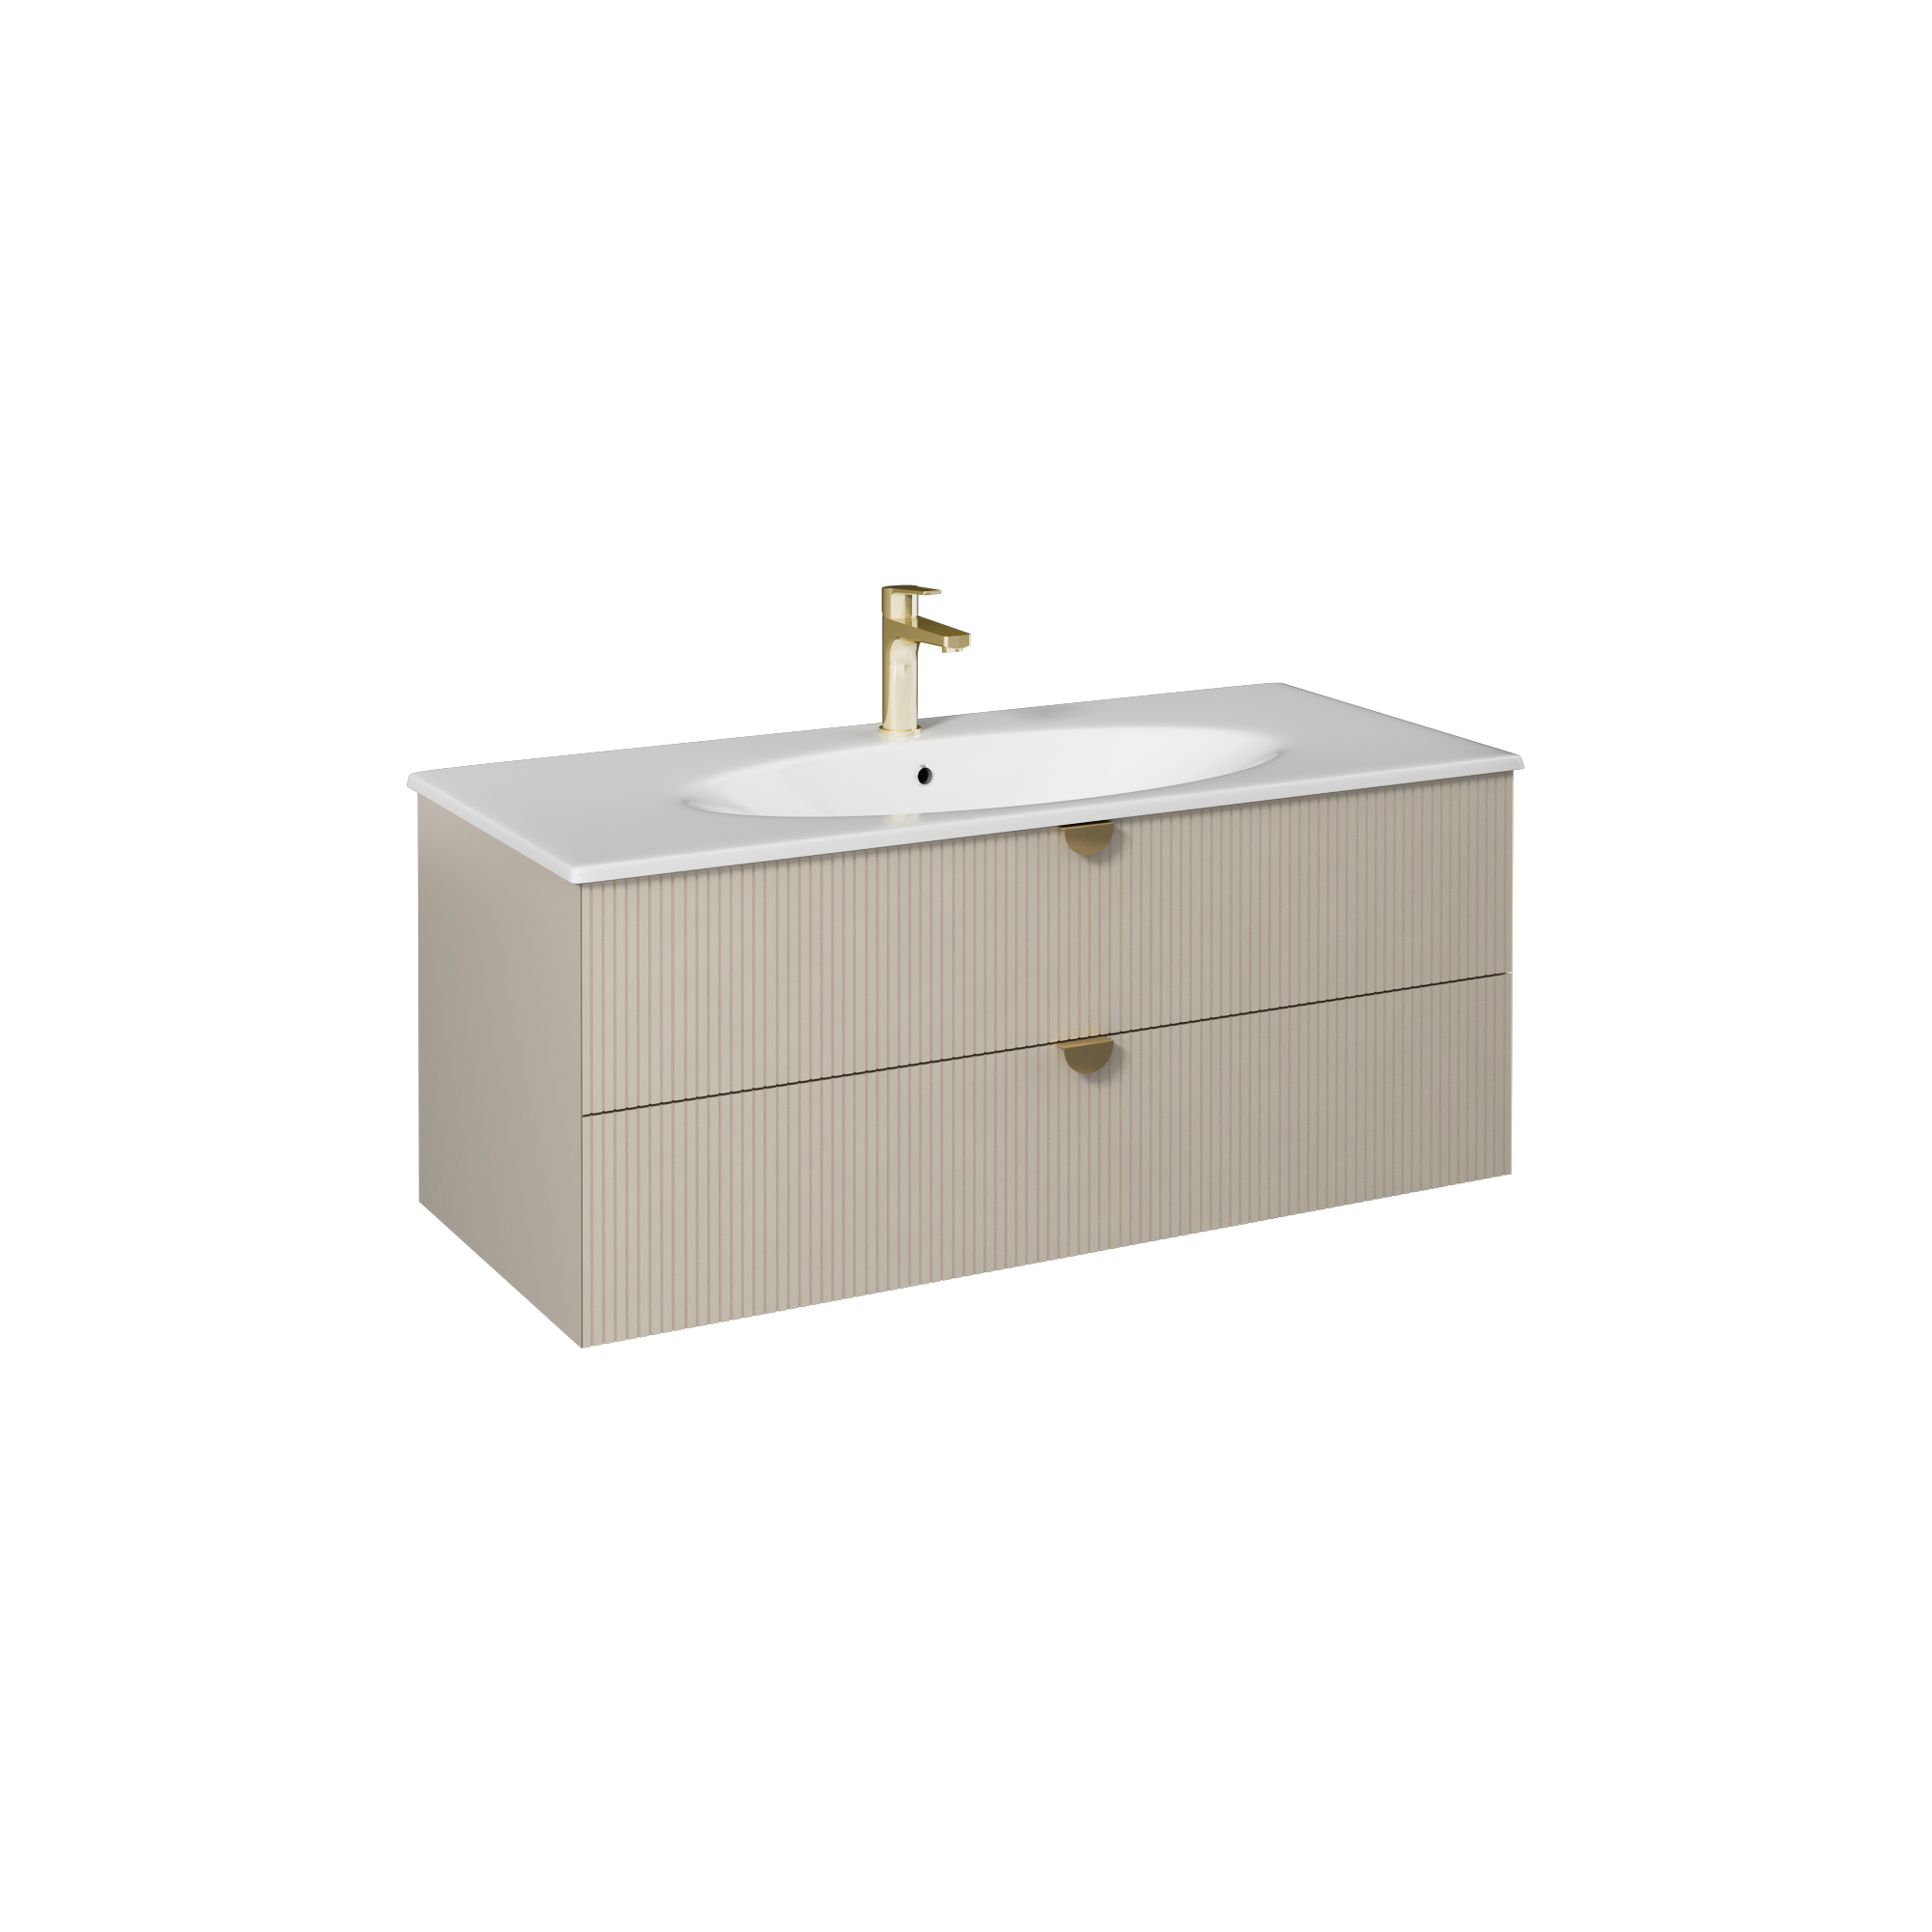 Infinity Washbasin Cabinet, Cream, Handle Bright Anodizing 47"